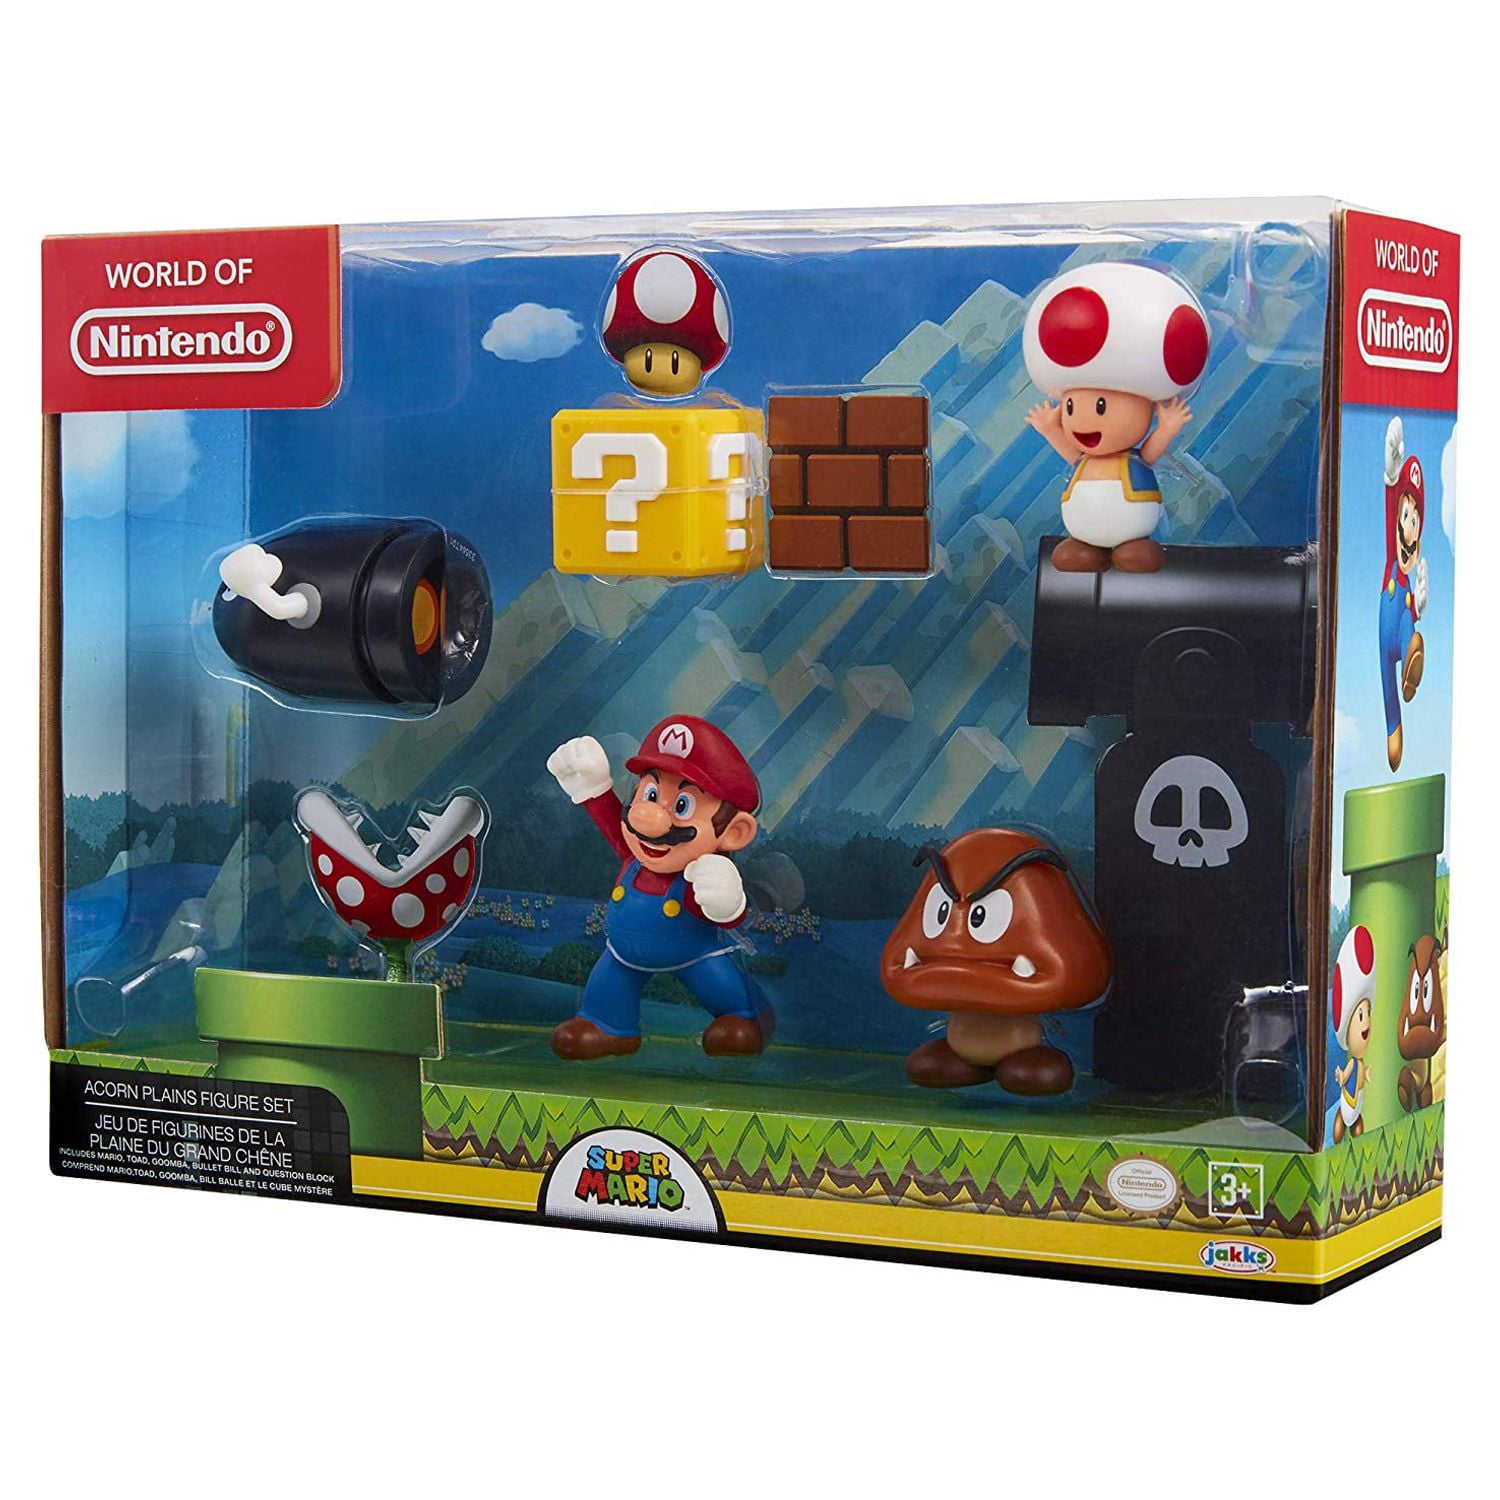 Figurines pour diorama Plaine du grand chêne Nintendo Super Mario